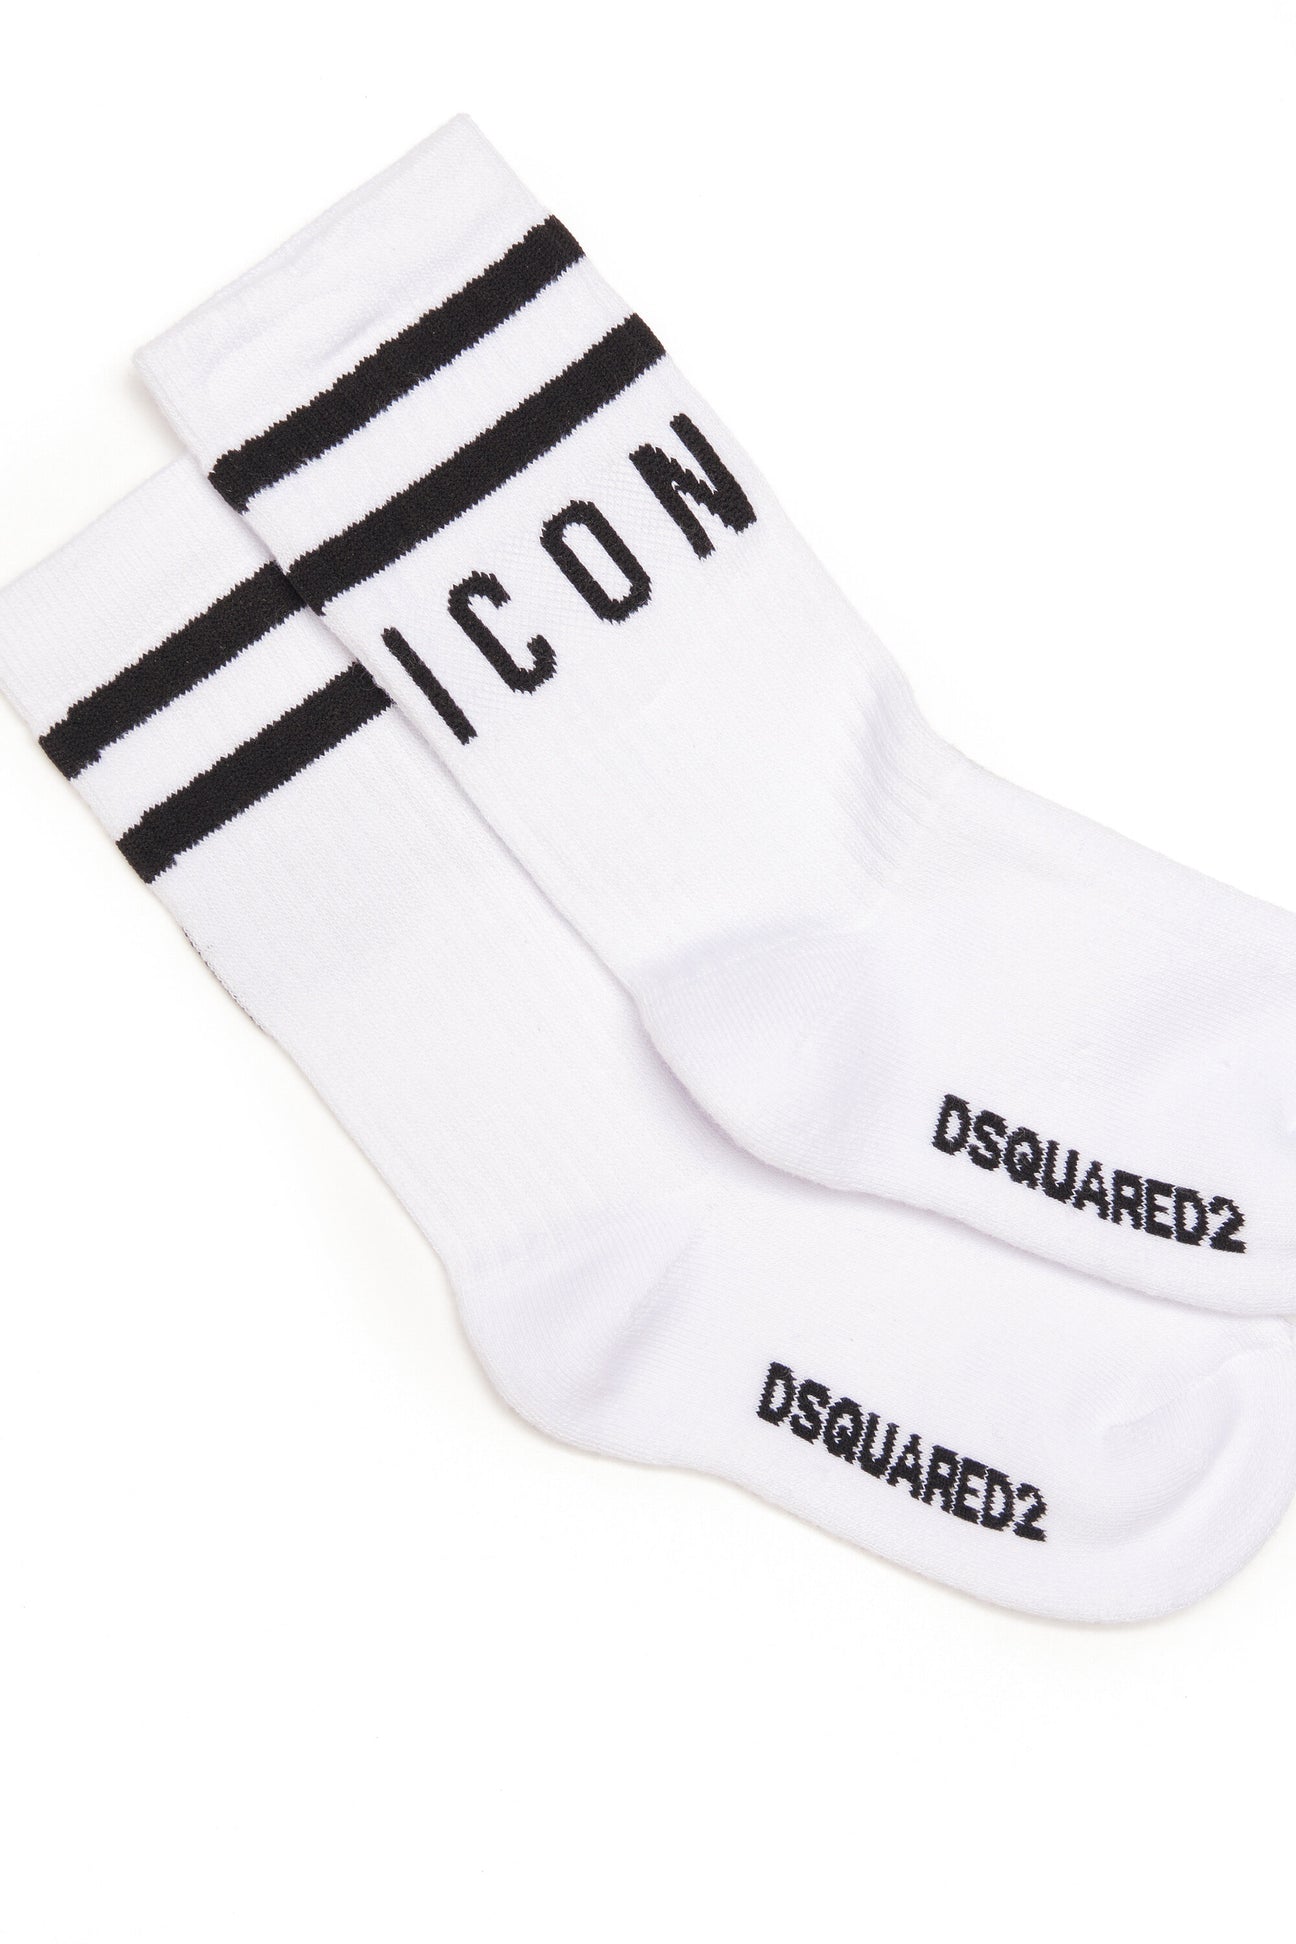 White socks with Icon logo White socks with Icon logo